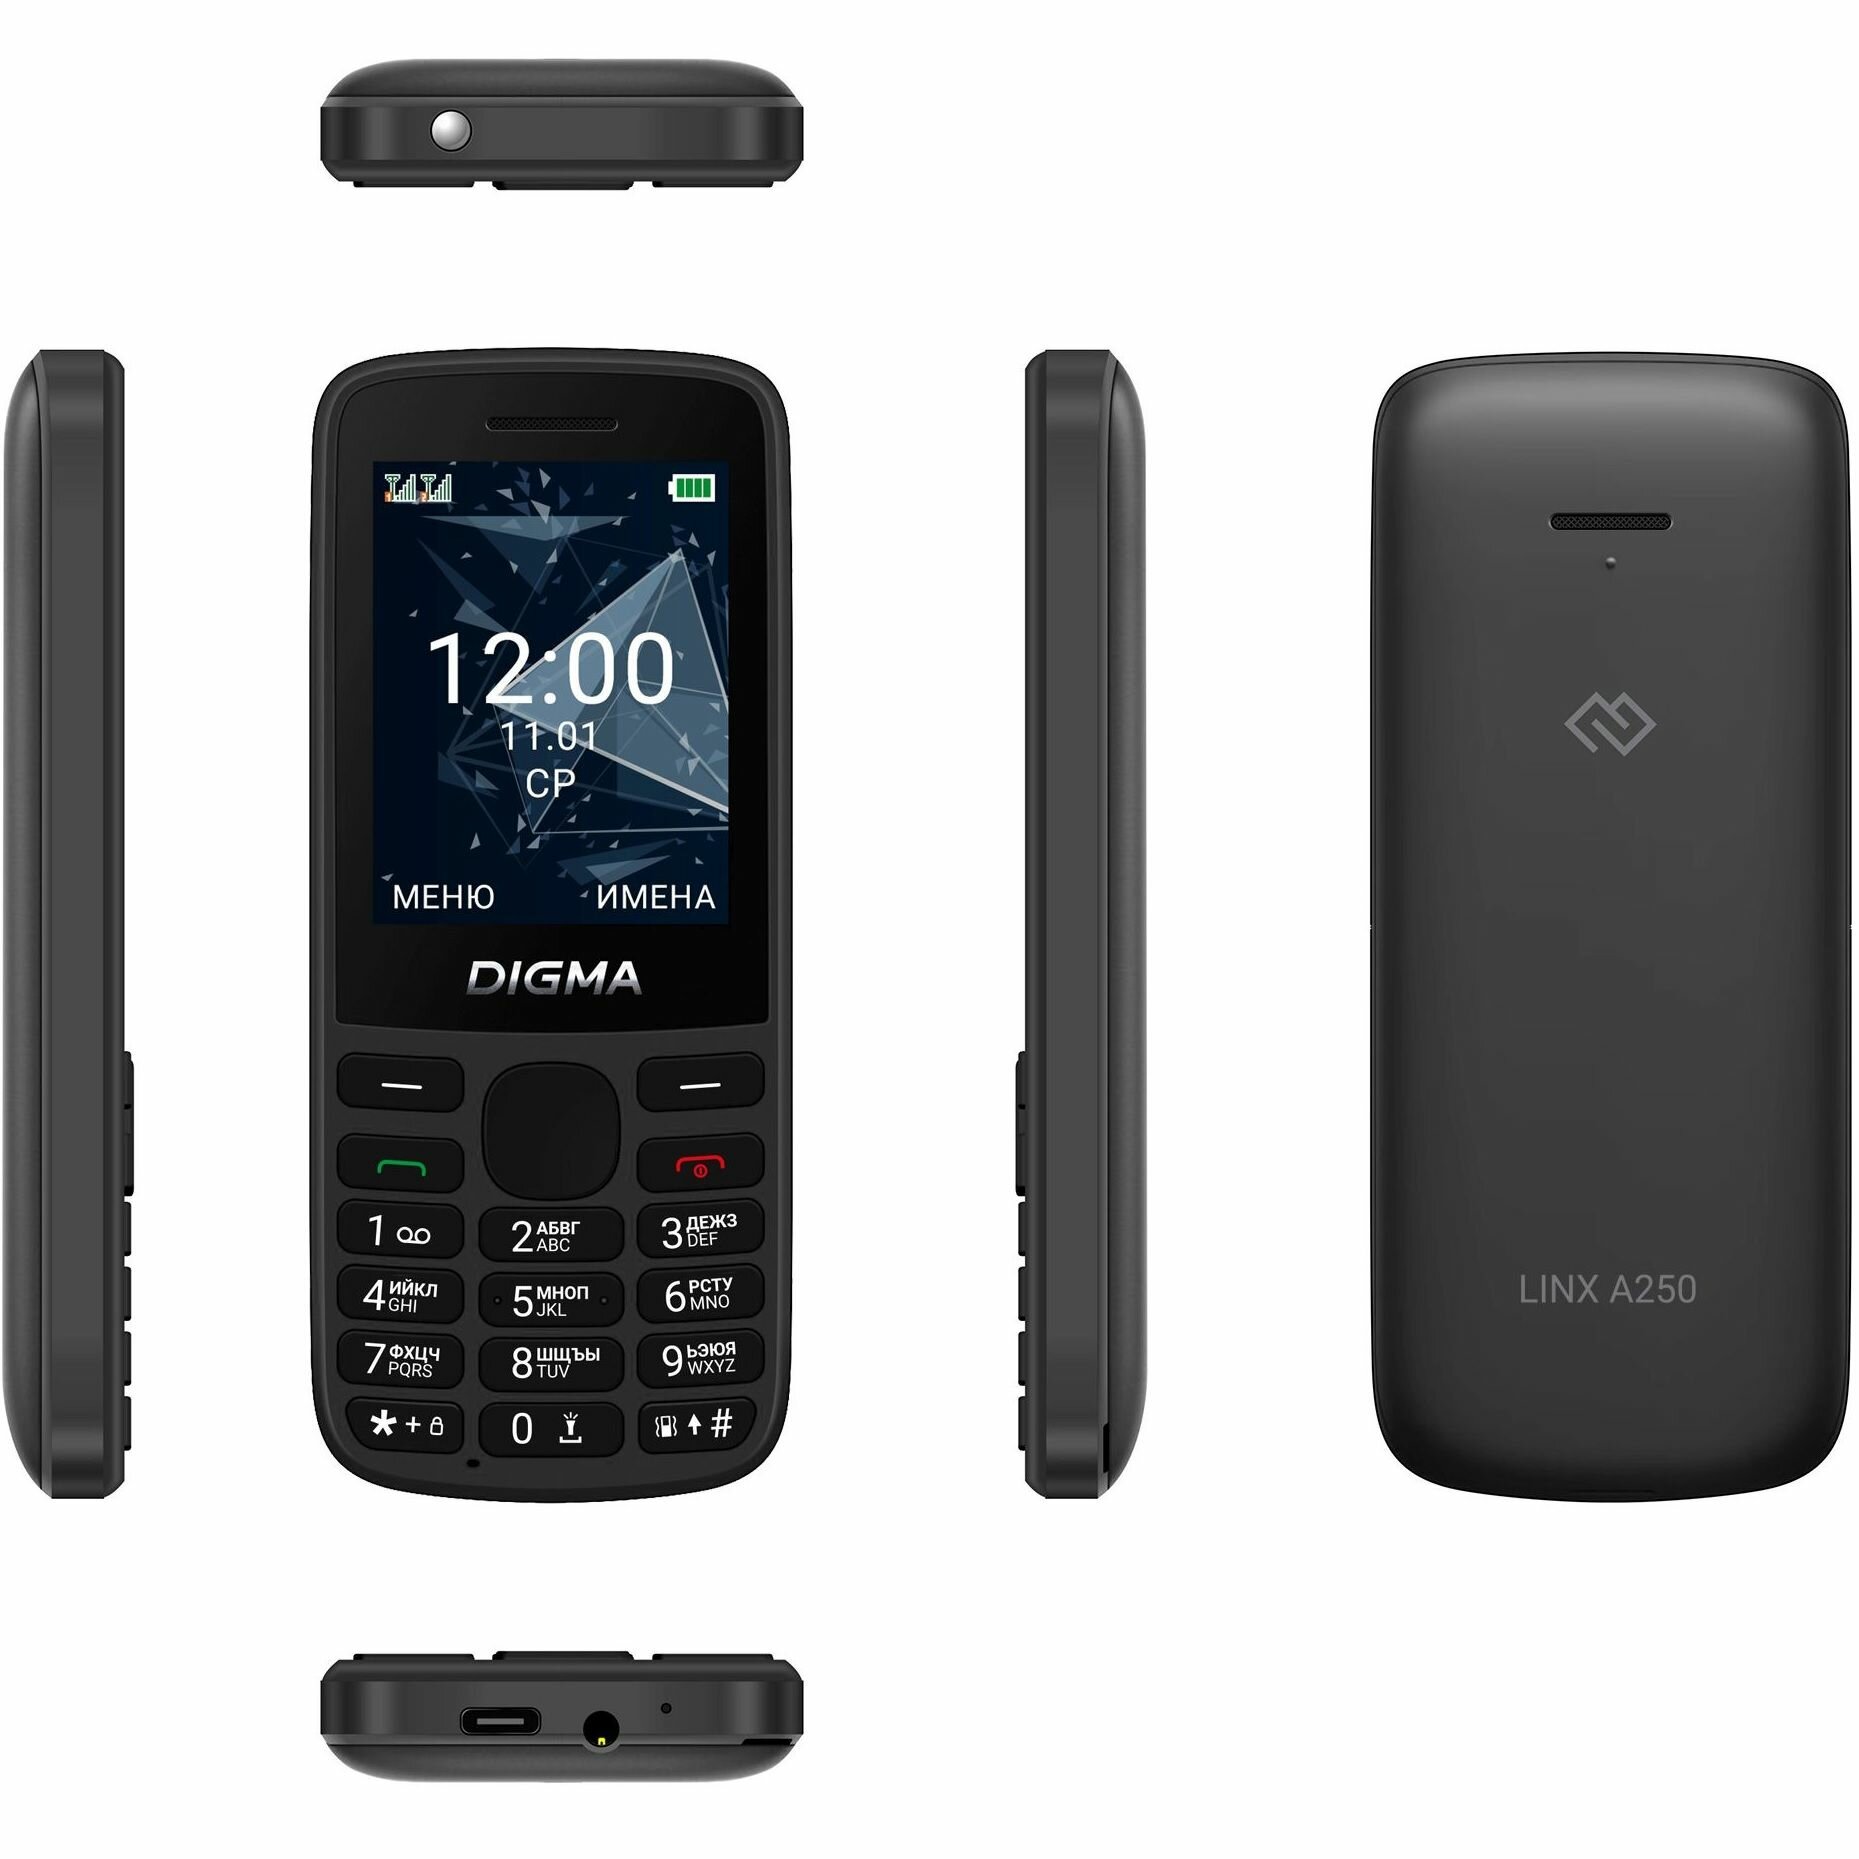 Мобильный телефон Digma 1888918 Linx 128Mb 0.048 зеленый моноблок 3G 4G 2Sim 2.4" 240x320 GSM900/1800 GSM1900 - фото №18